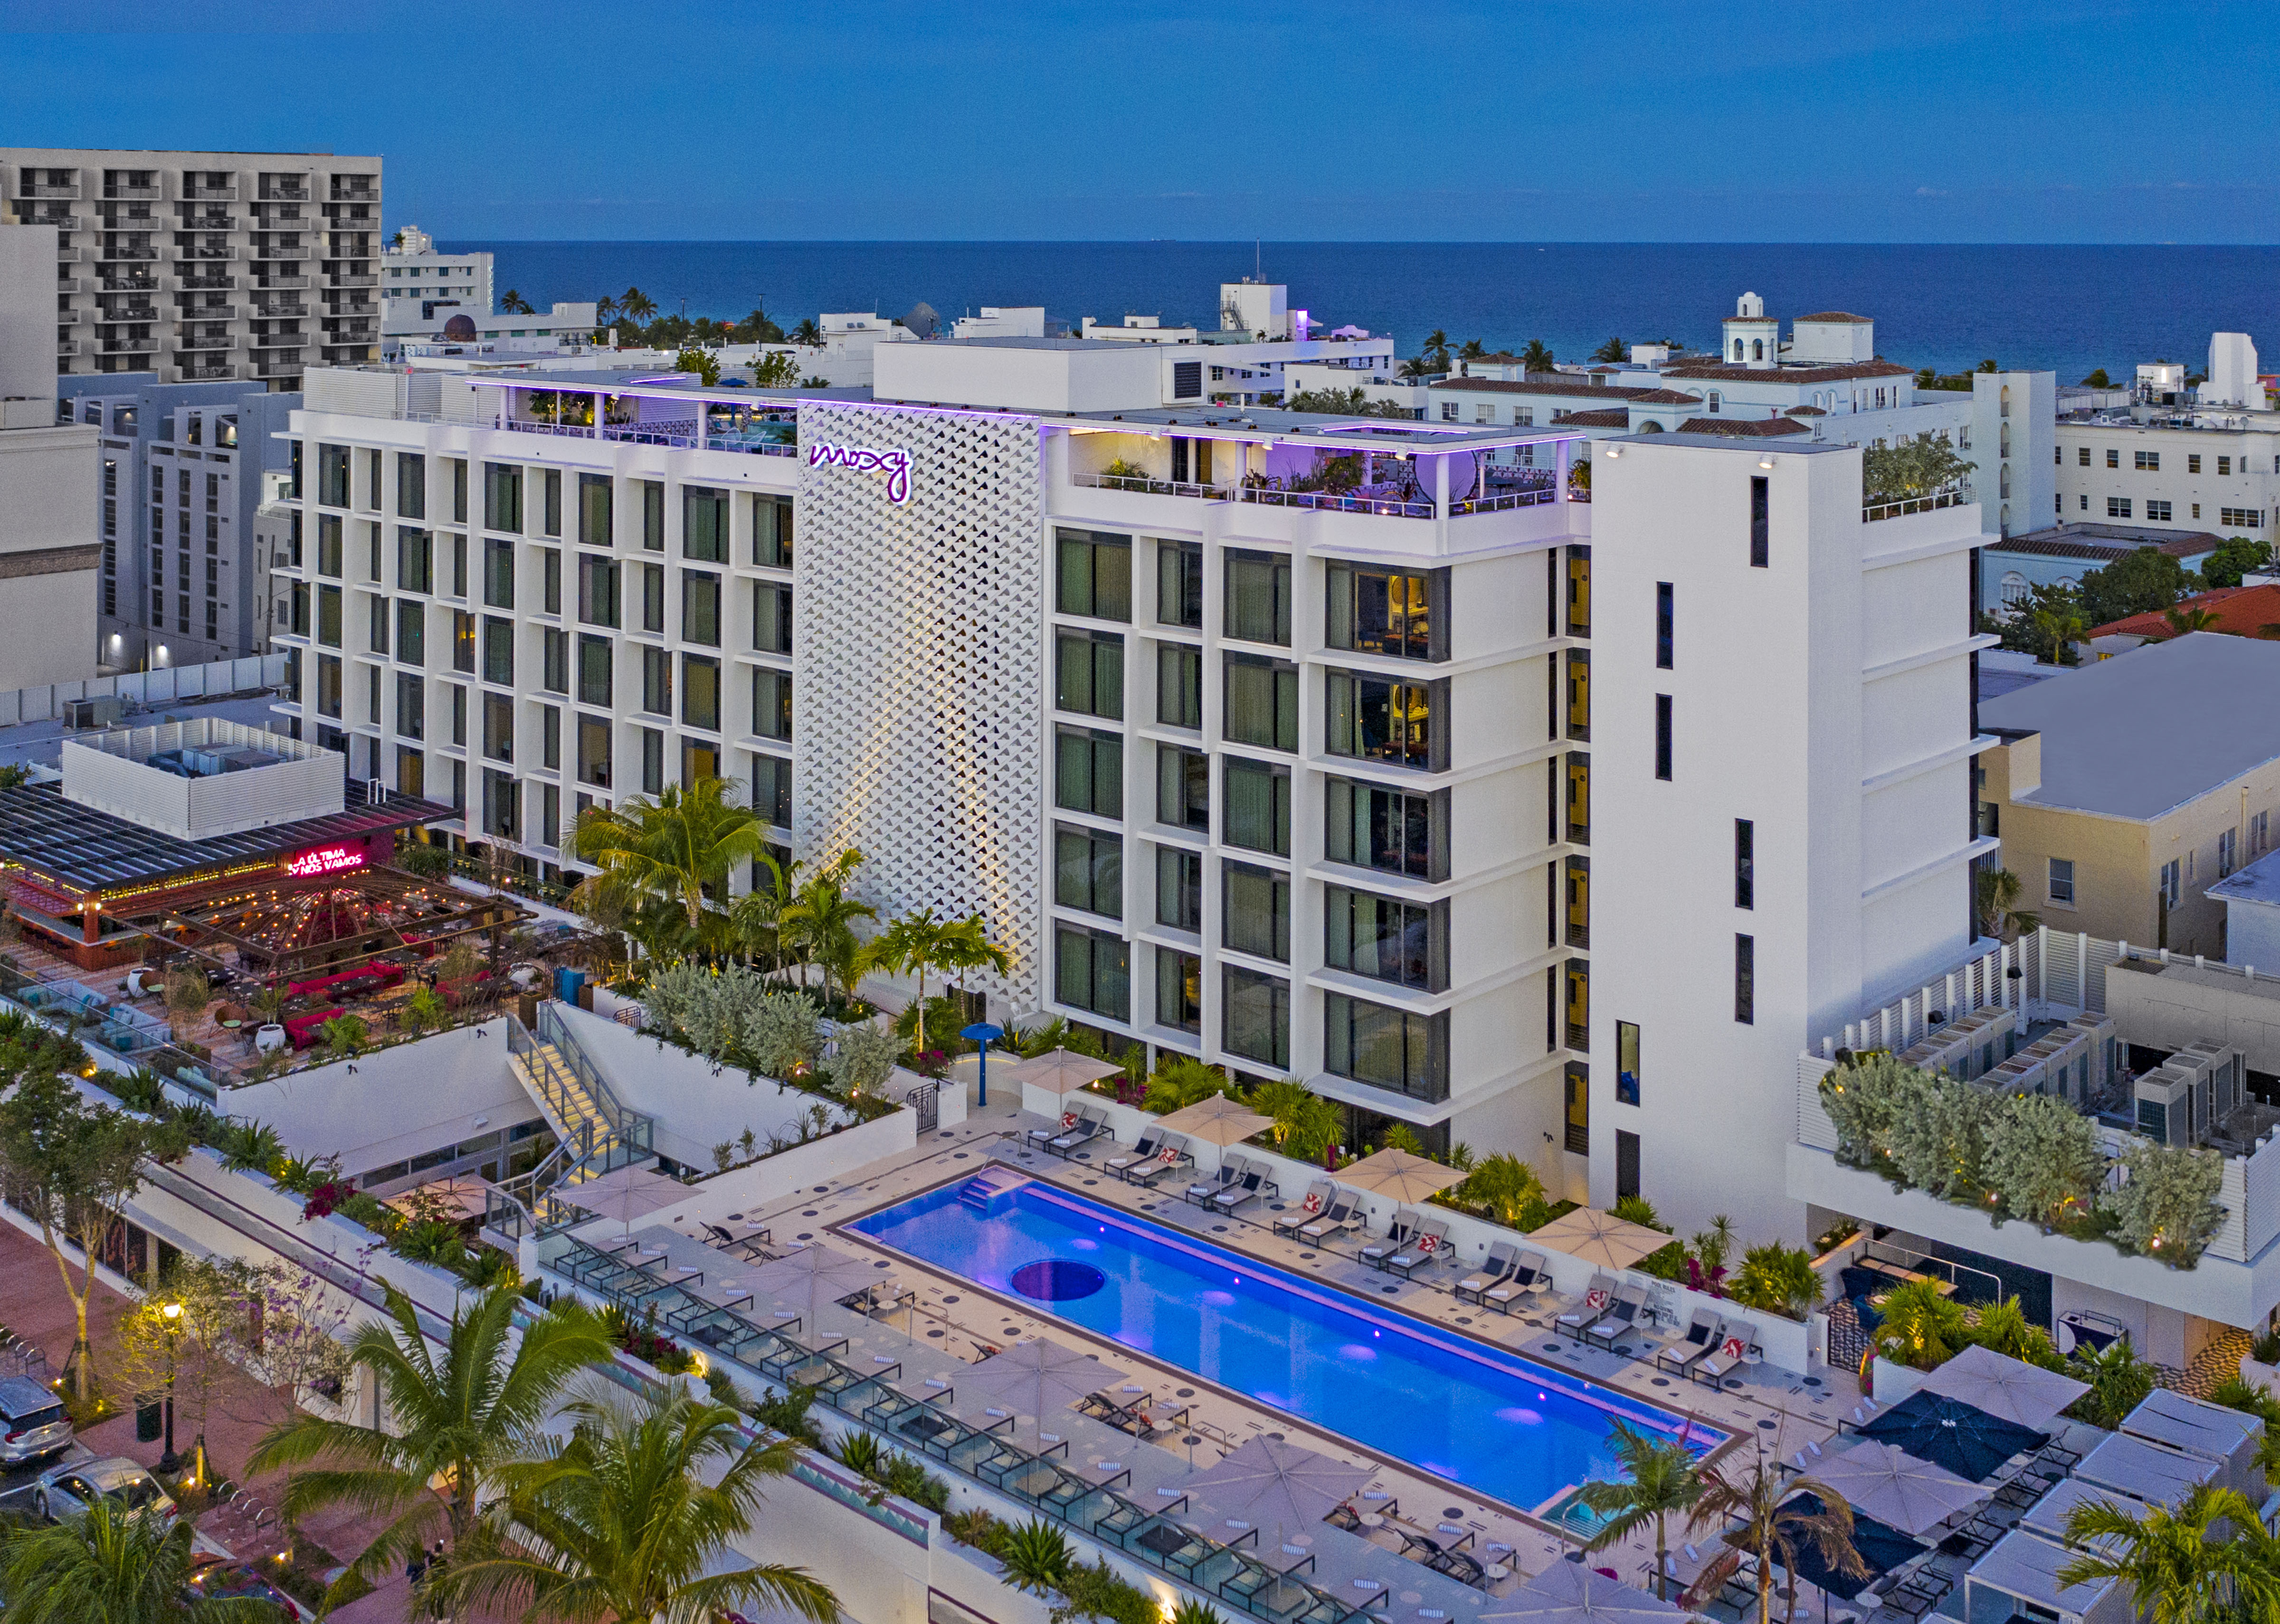 Das Moxy Hotel liegt perfekt in Miami und ist ein luxuriöser Ausgangspunkt für Ihren Aufenthalt